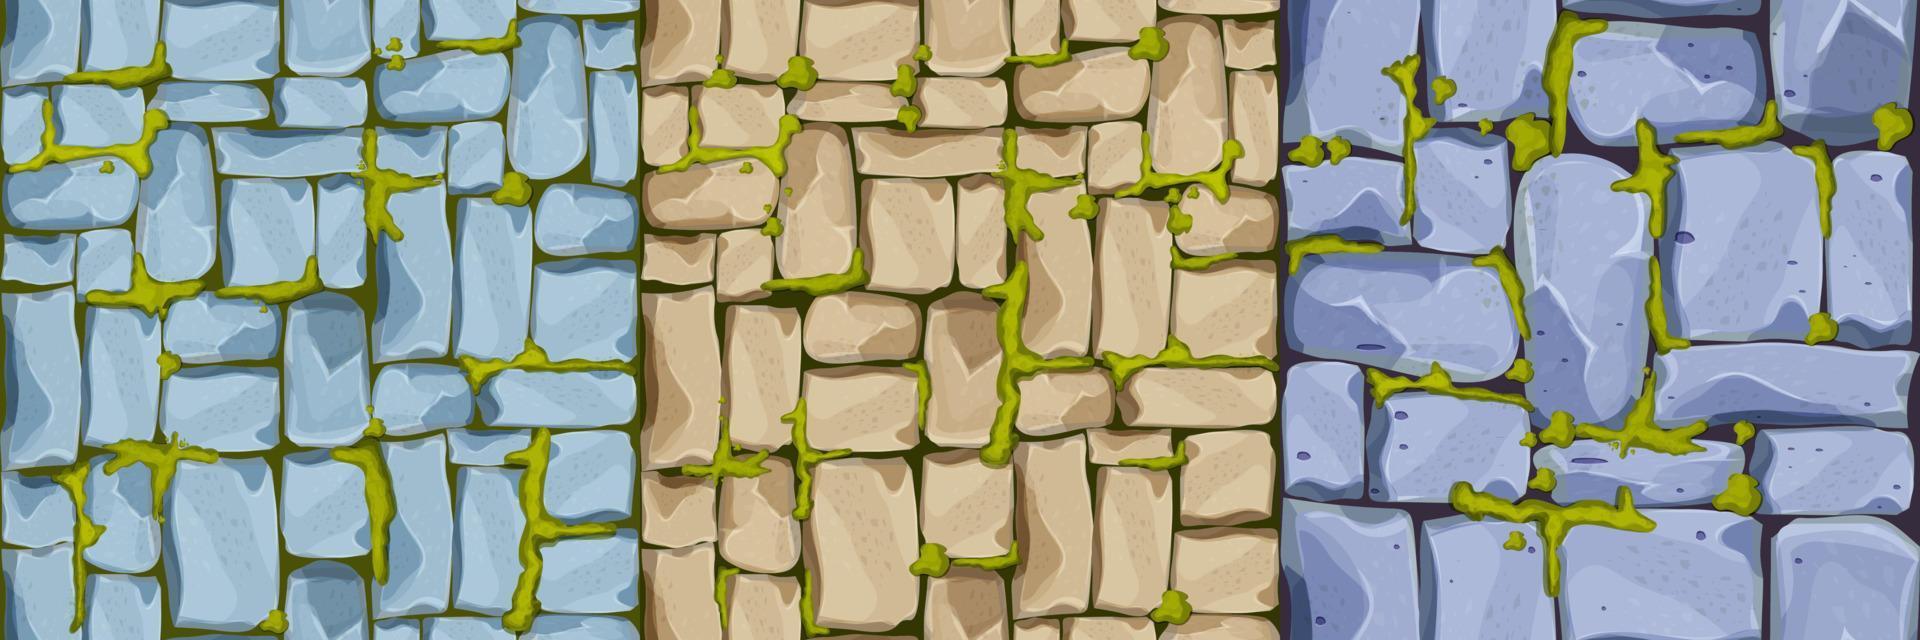 Set Steinmauer, Pflaster aus Ziegeln, Felsen mit Moos, Spielhintergrund im Cartoon-Stil, nahtlose strukturierte Oberfläche. ui-Spielobjekt, Straßen- oder Bodenmaterial. Vektor-Illustration vektor